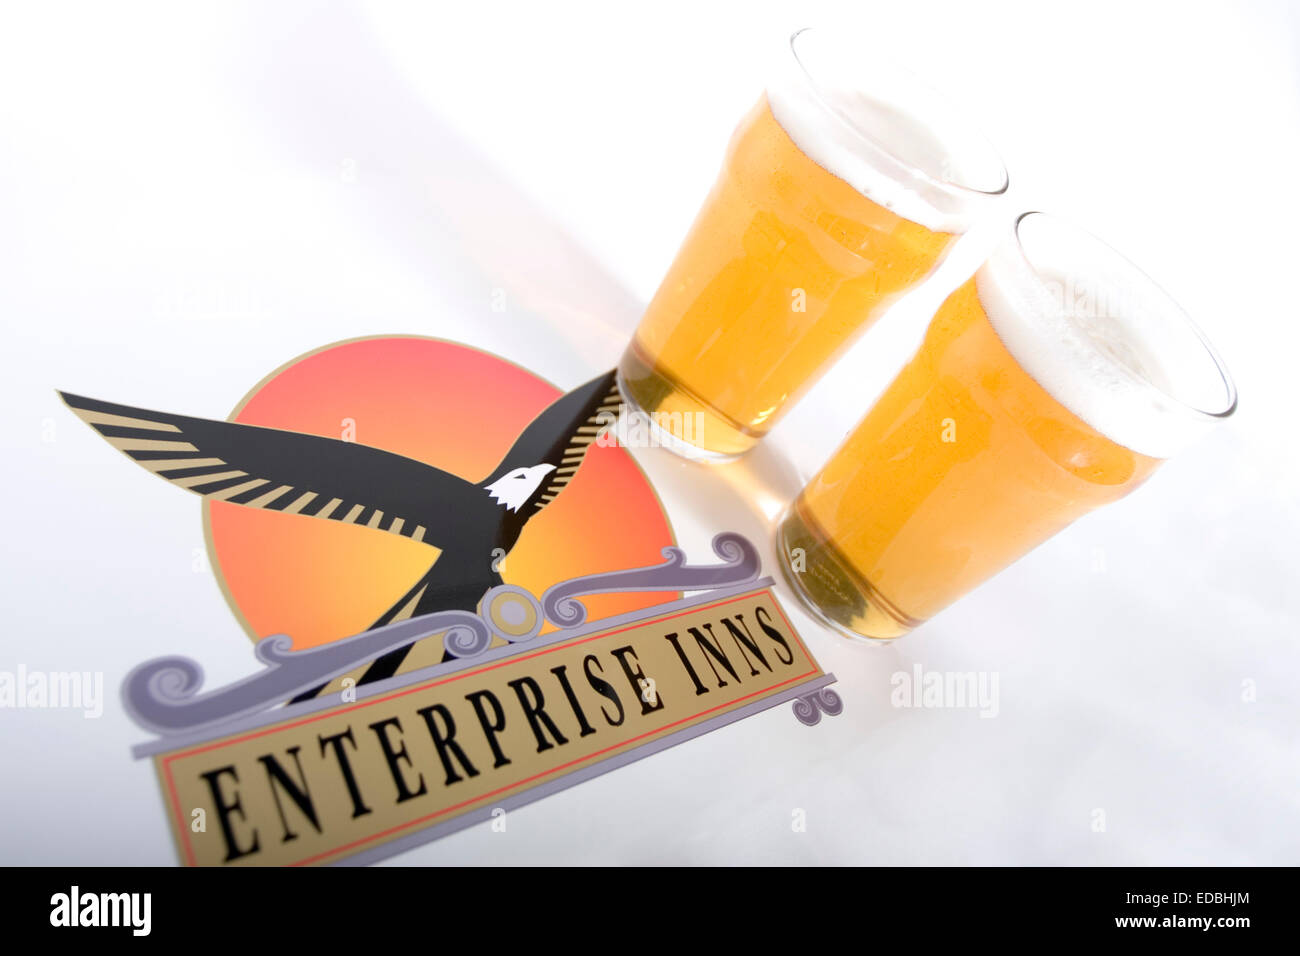 Image d'illustration de l'Enterprise Inns logo et deux pintes de plus grandes Banque D'Images